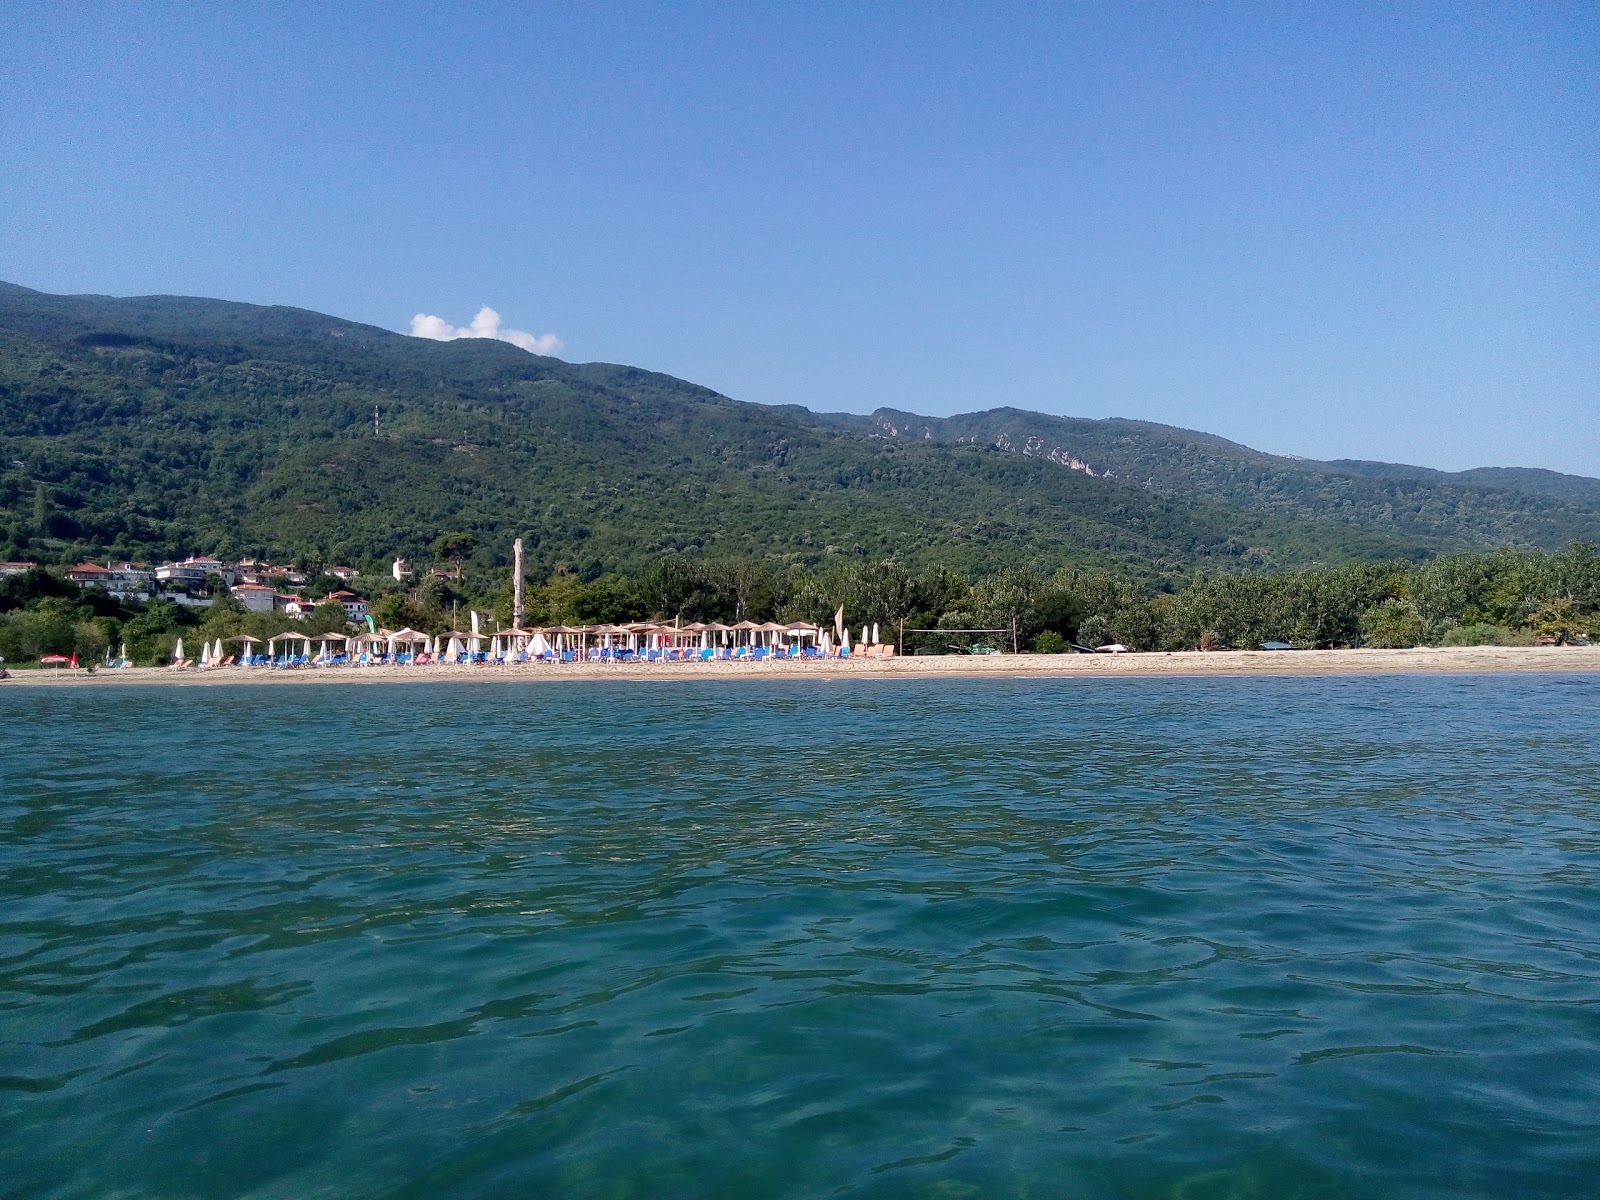 Foto af Defteri Gefira beach - populært sted blandt afslapningskendere